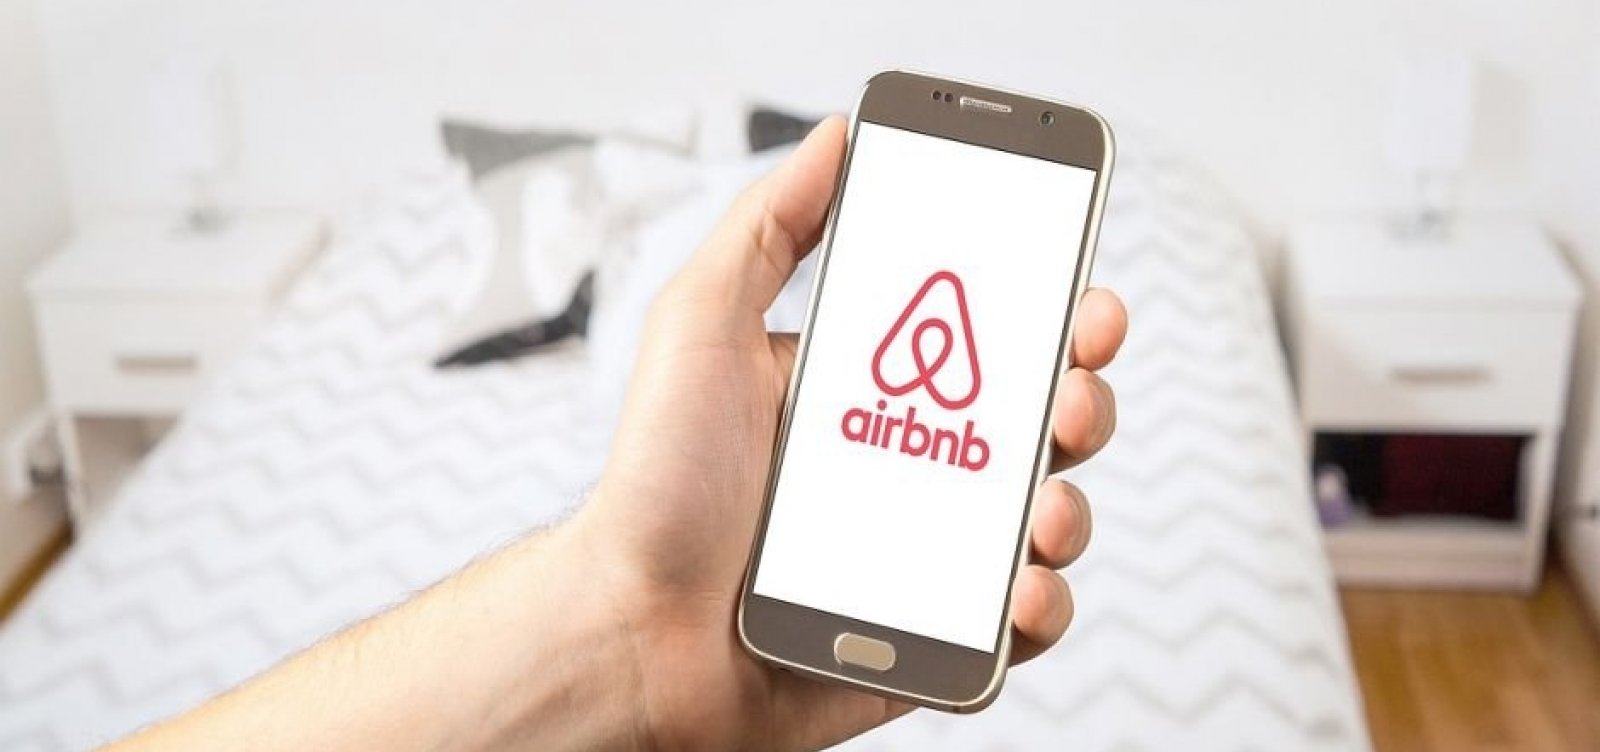 Airbnb registra 3,8 milhões de pernoites em 2018 e gera prejuízos para hotelaria